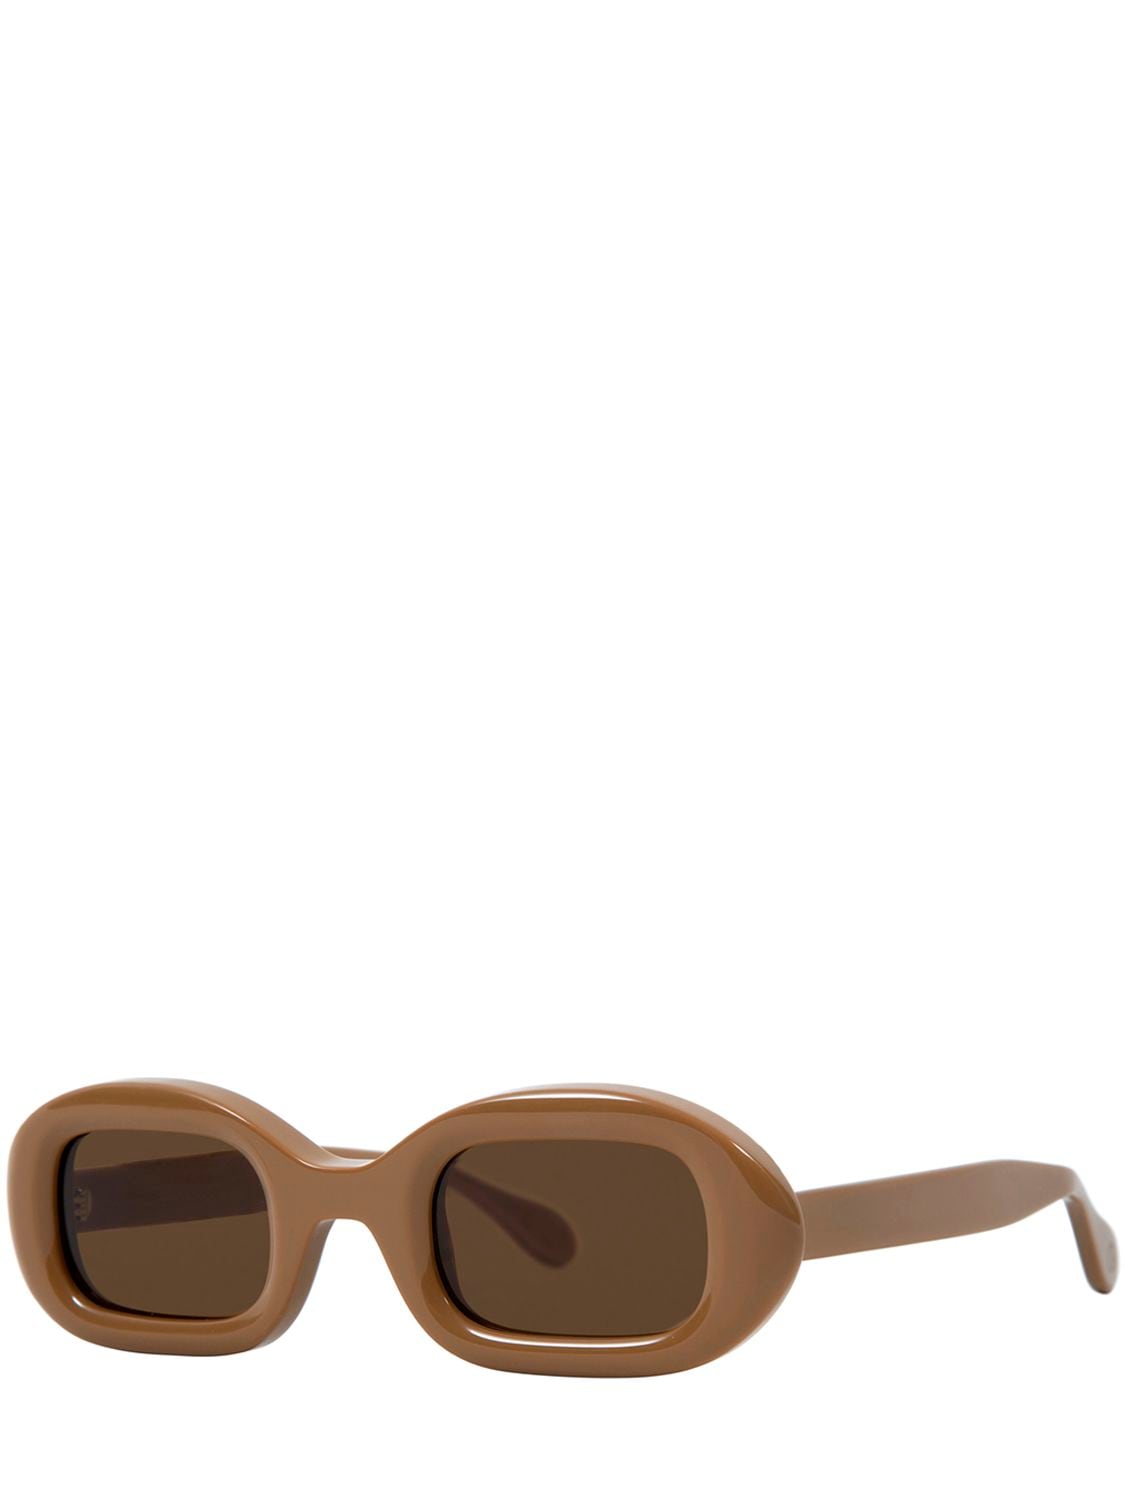 Shop Delarge Flow Oval Acetate Sunglasses In Kamel,braun